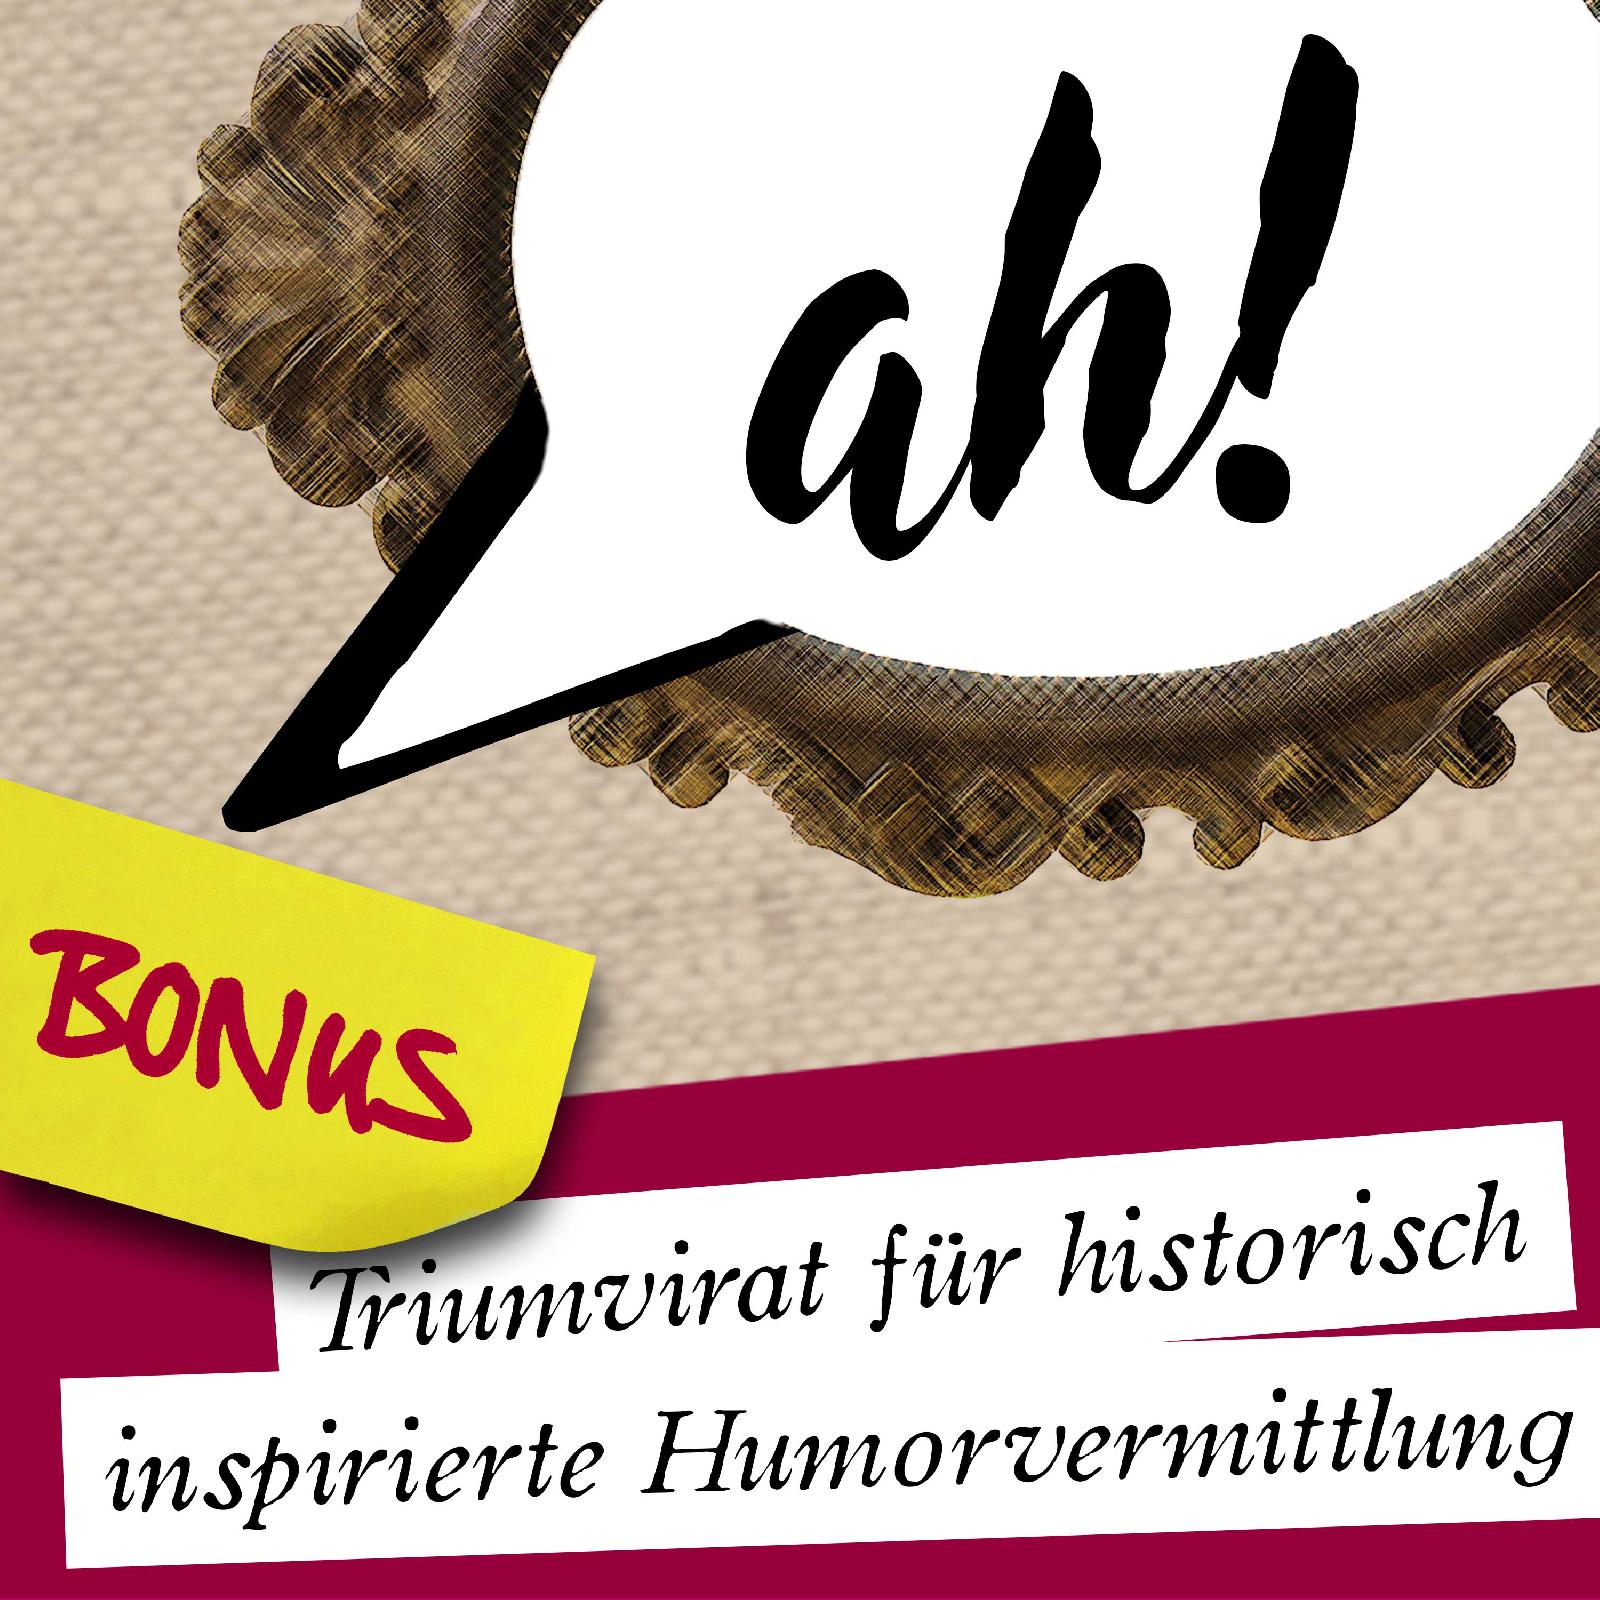 Ach-Podcast: BONUS 14: Wer bin ich? (live feat. Philip Steffan)